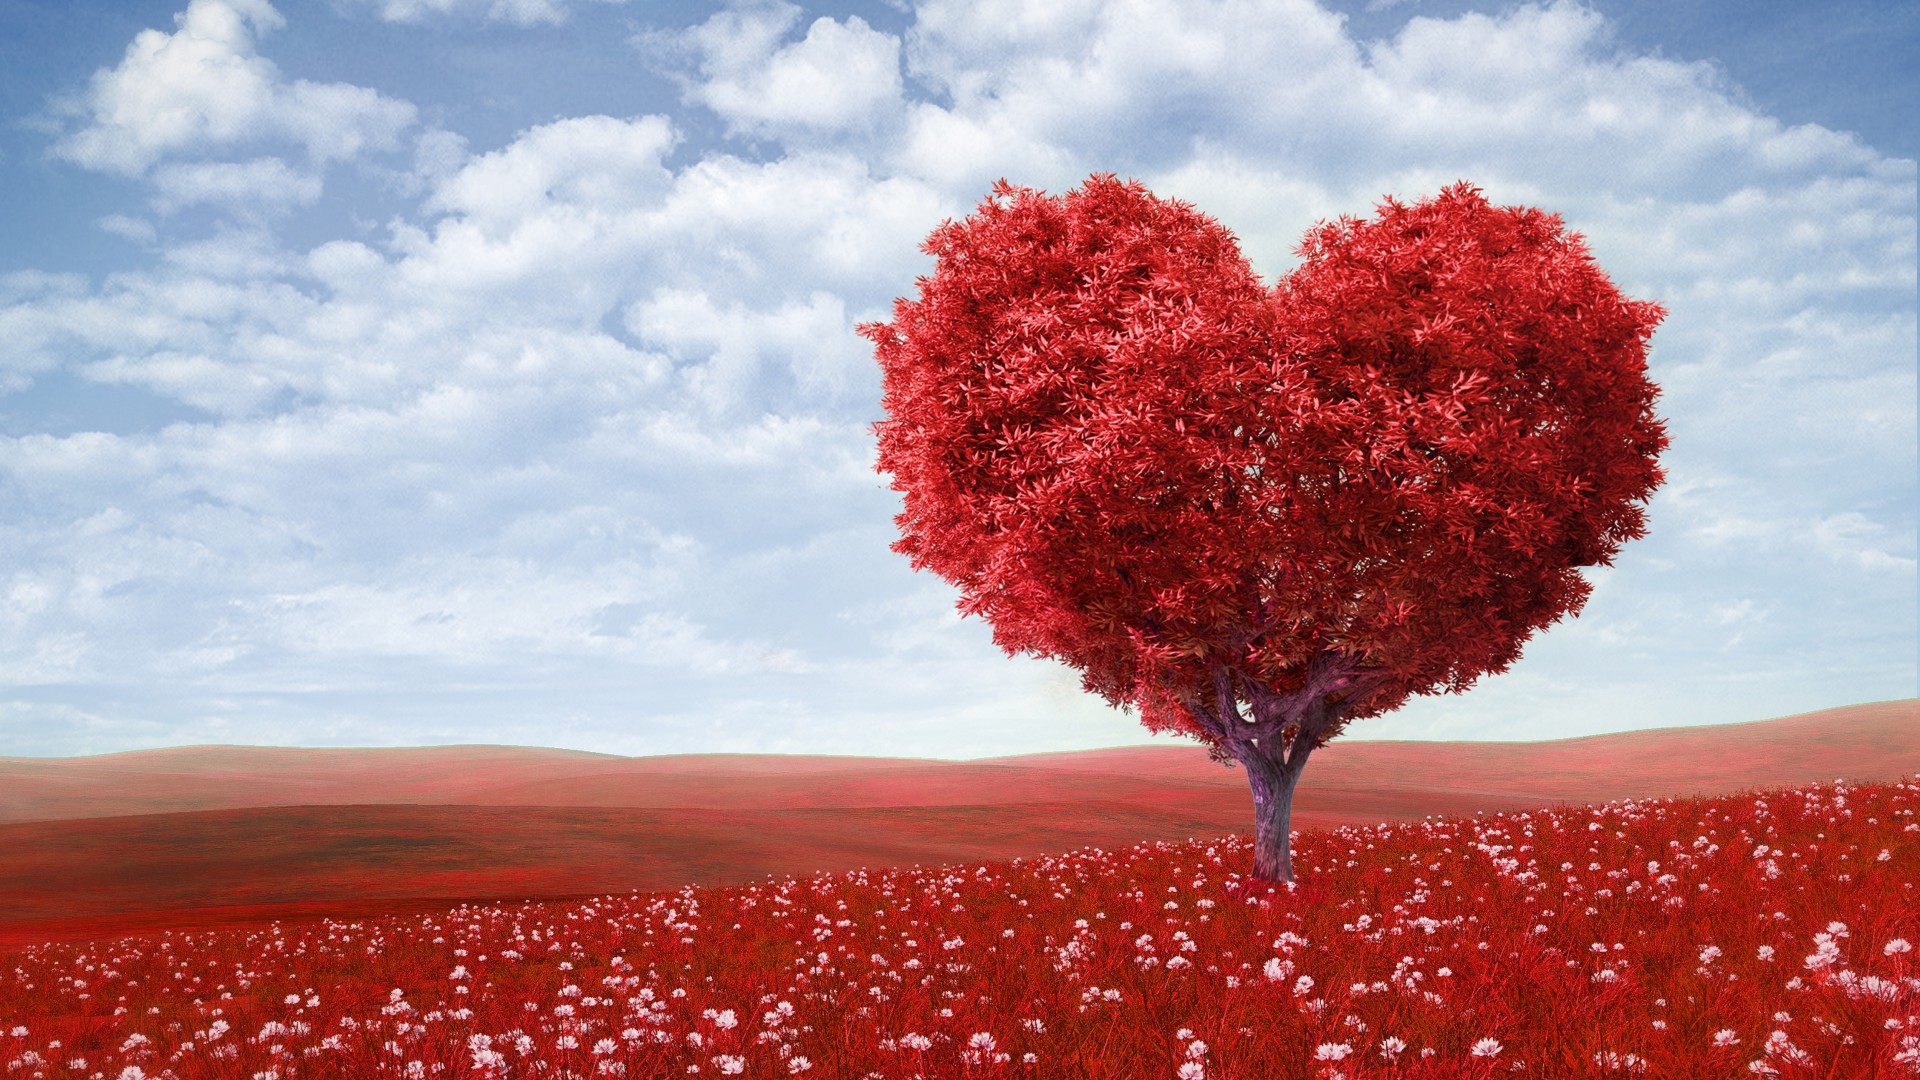 fondos de pantalla hd amor,rojo,cielo,naturaleza,paisaje natural,árbol